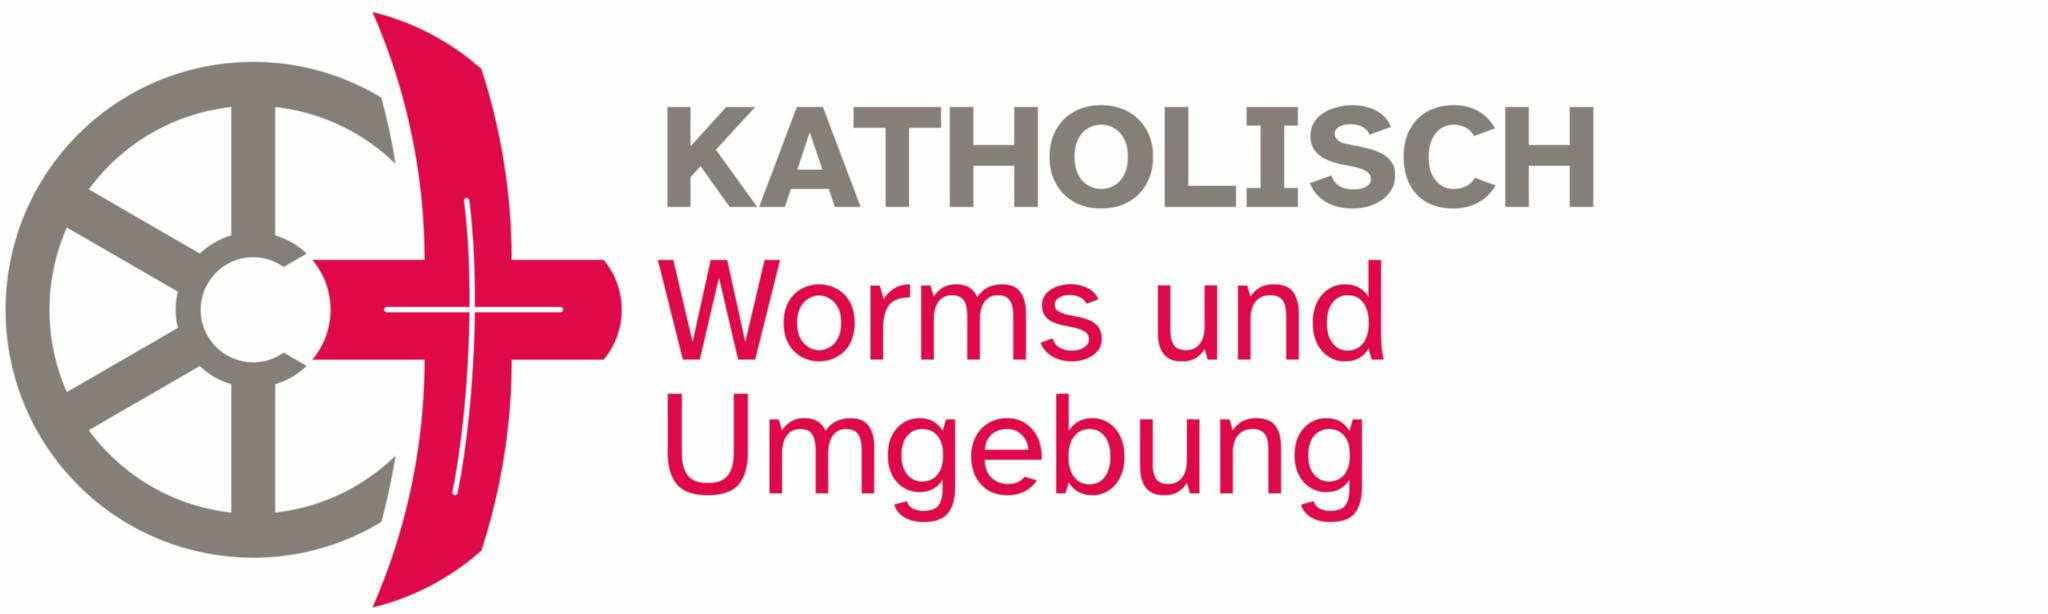 Worms_und_Umgebung_CMYK_classic_gross